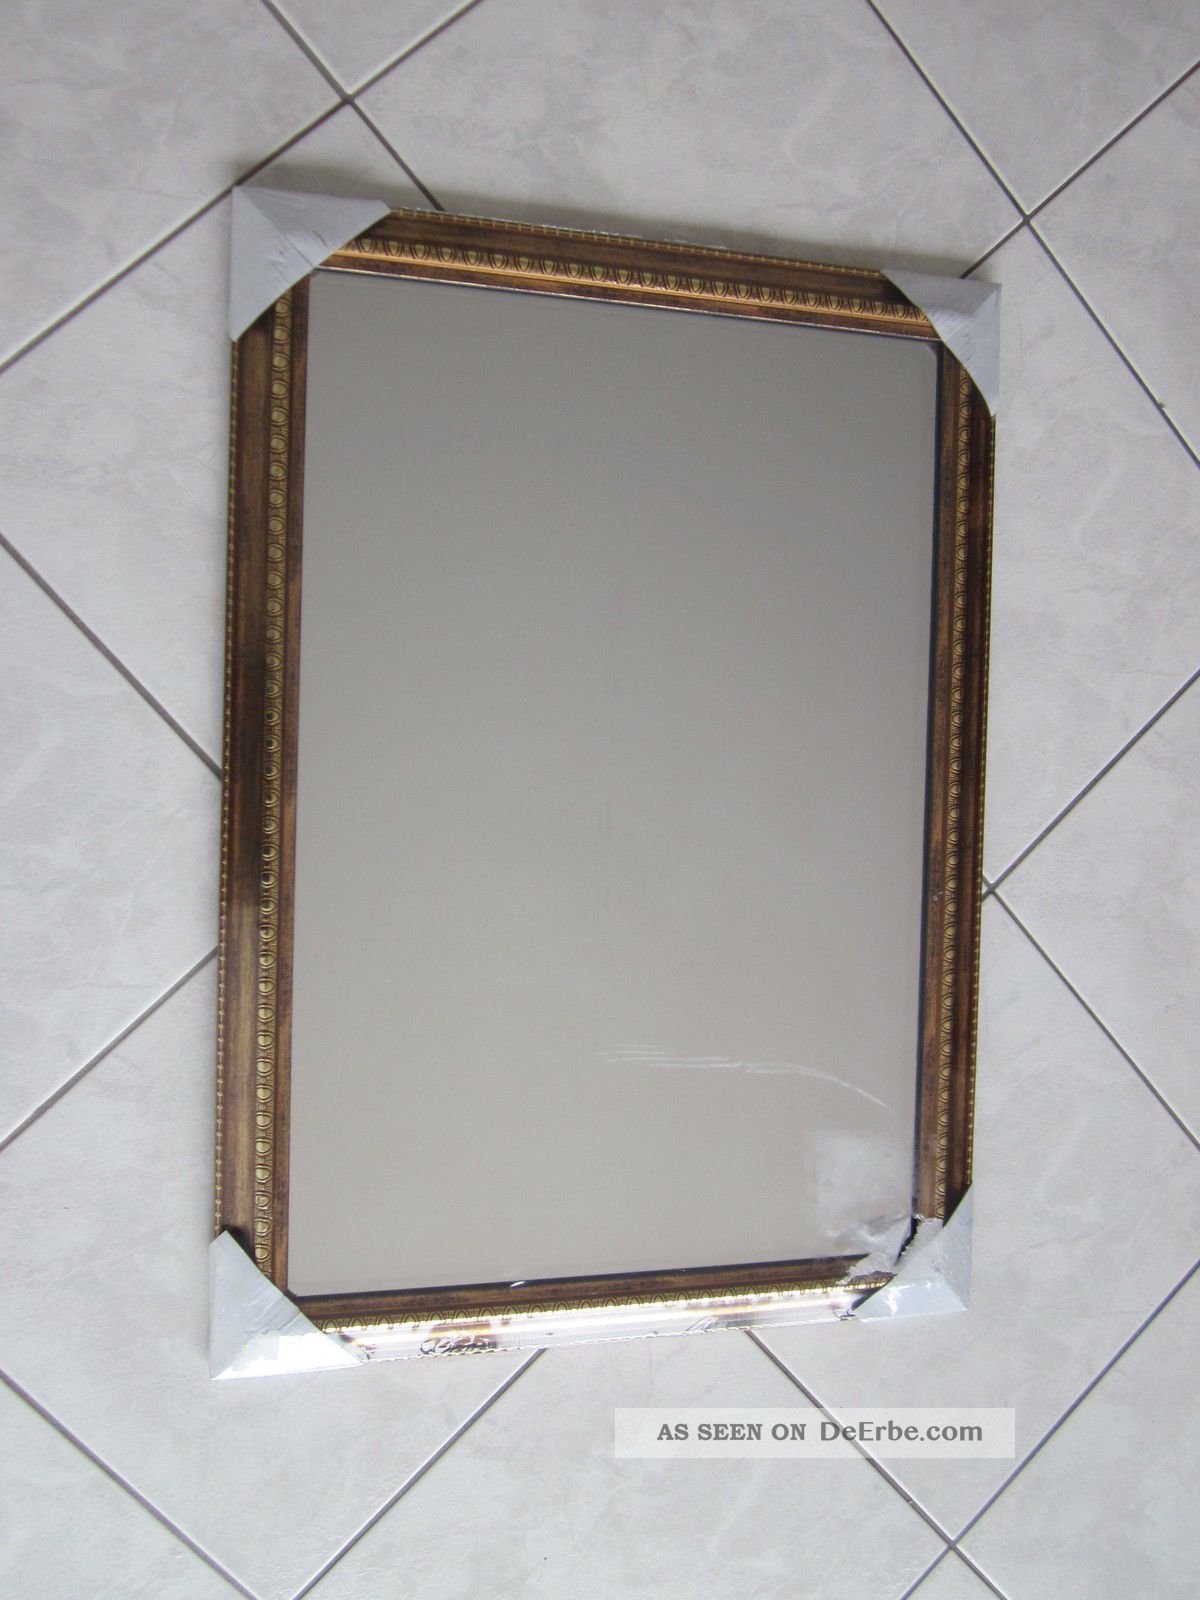 Alter Spiegel Rahmenspiegel 50/70cm Wandspiegel Gold Farben Antik Repro Spiegel Bild